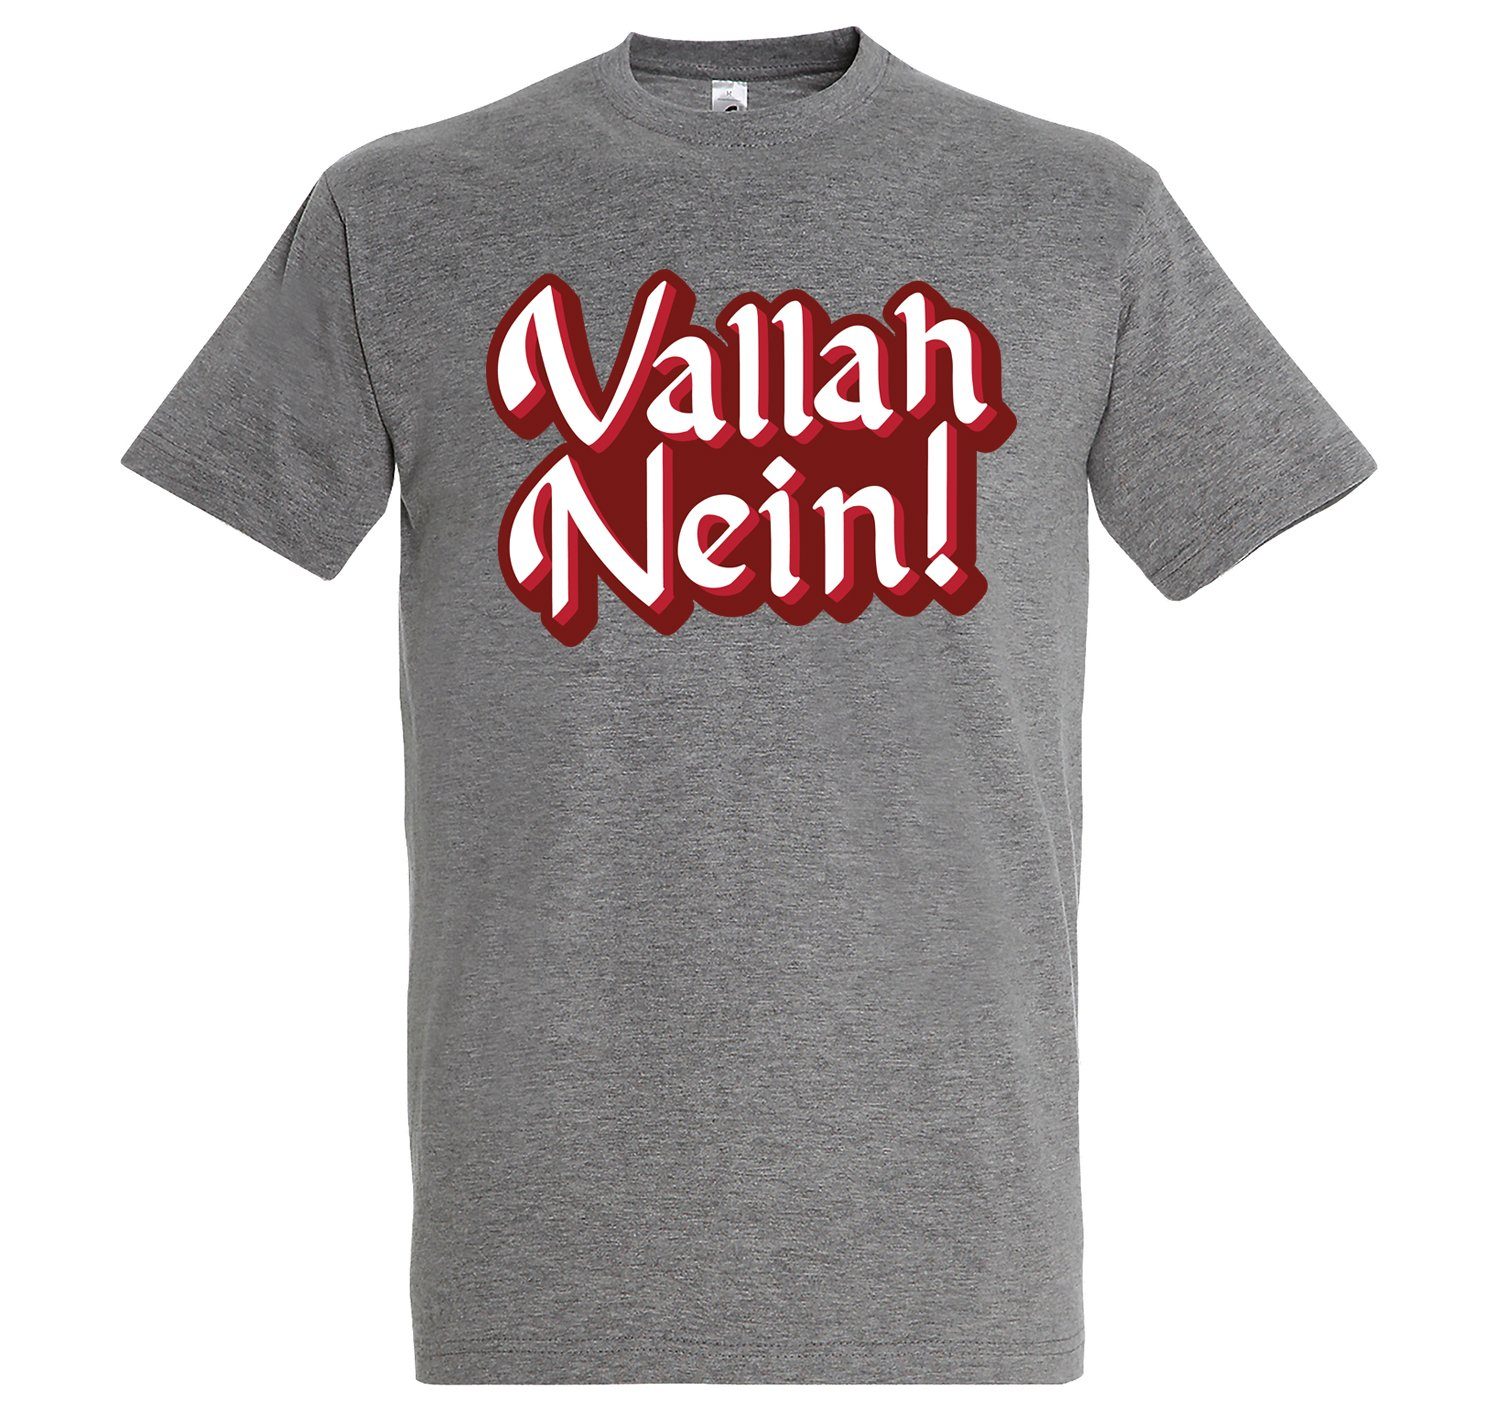 Youth Spruch mit Designz Grau lustigem T-Shirt "Vallah T-Shirt Nein" Herren